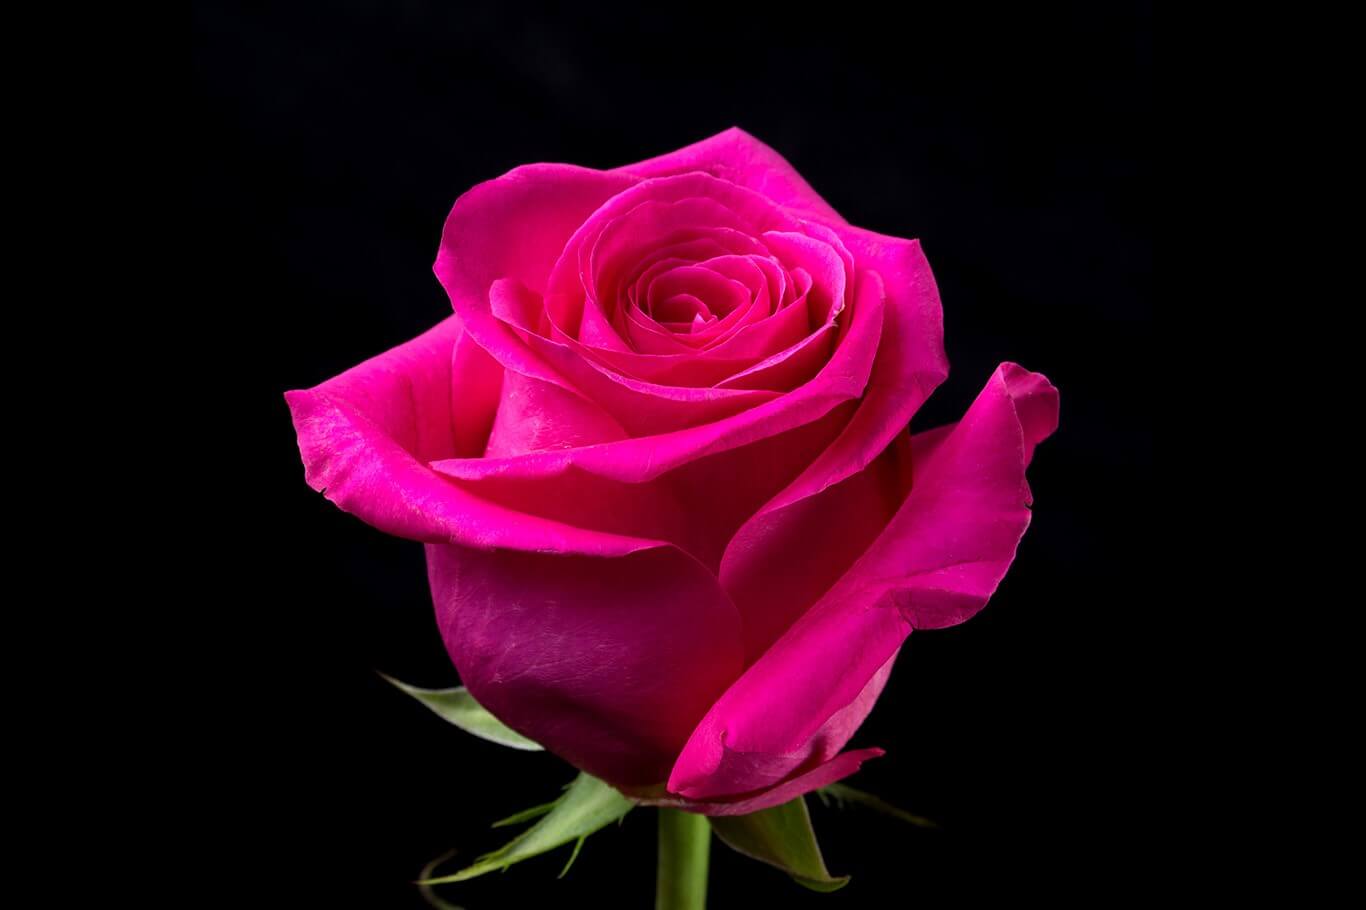 Pink Floyd - чайно-гибридная пурпурная роза из Нидерлдандов